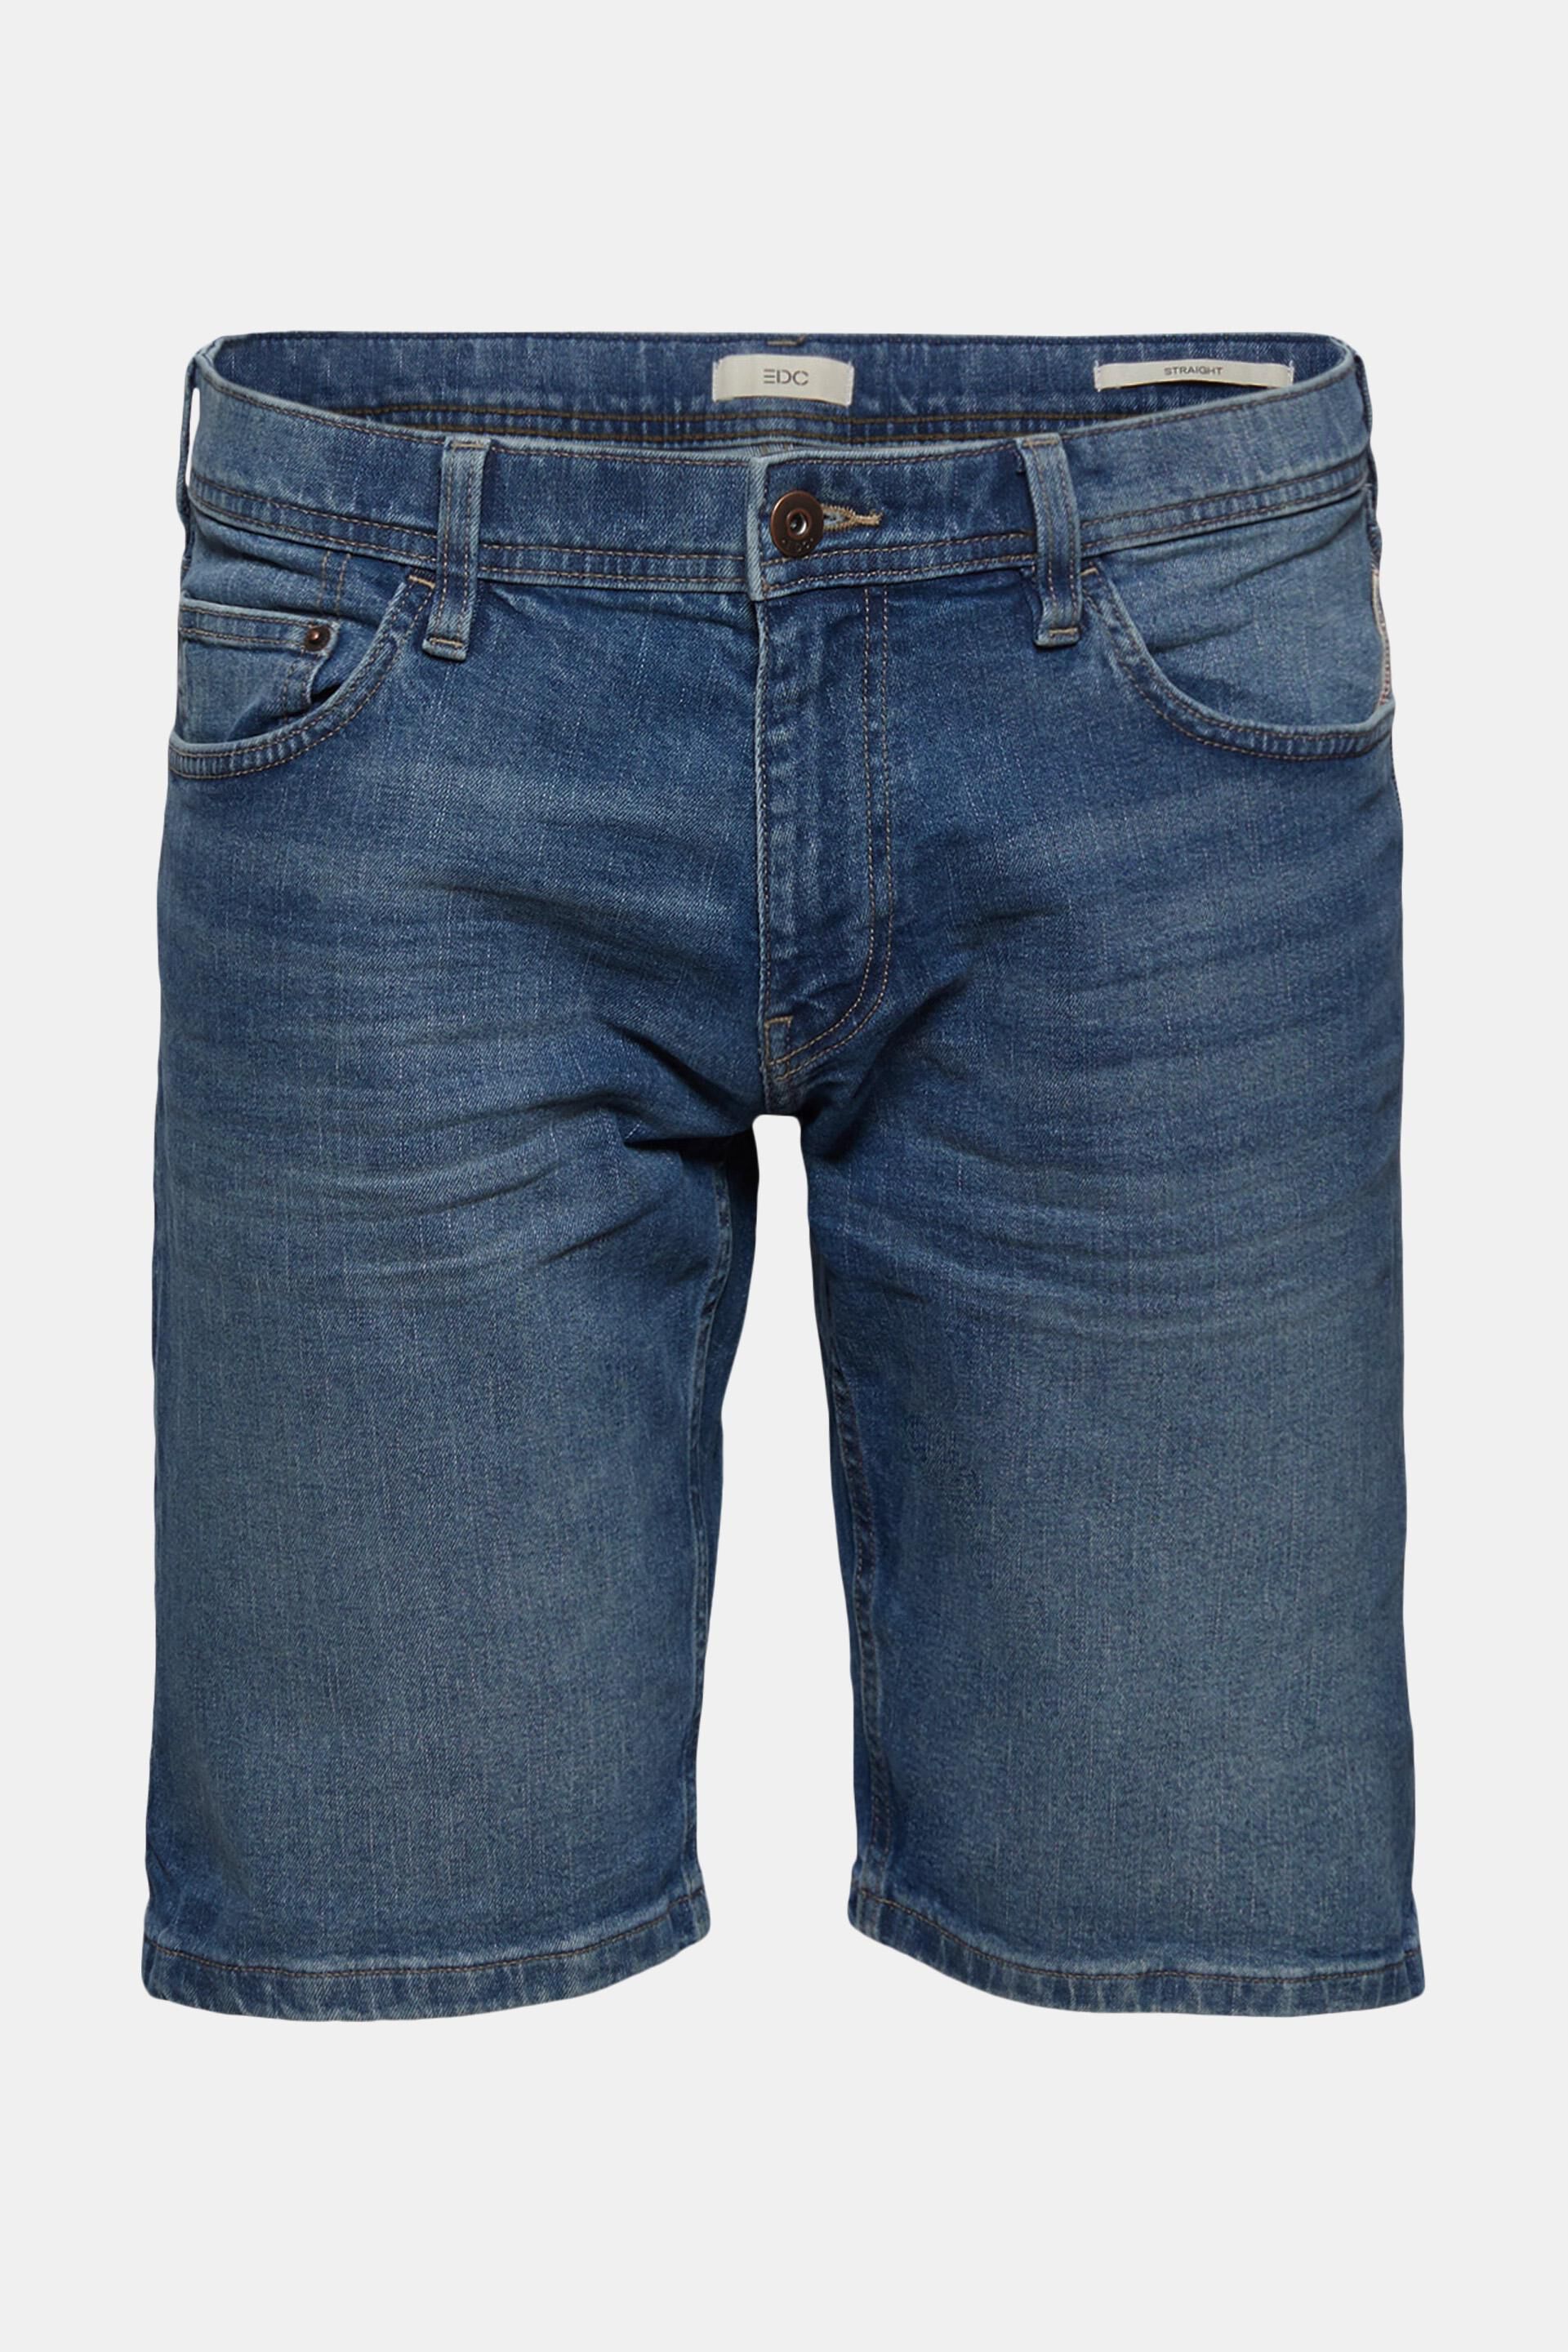 Esprit Denim Jeans in het Naturel voor heren Heren Kleding voor voor Shorts voor Bermudas 